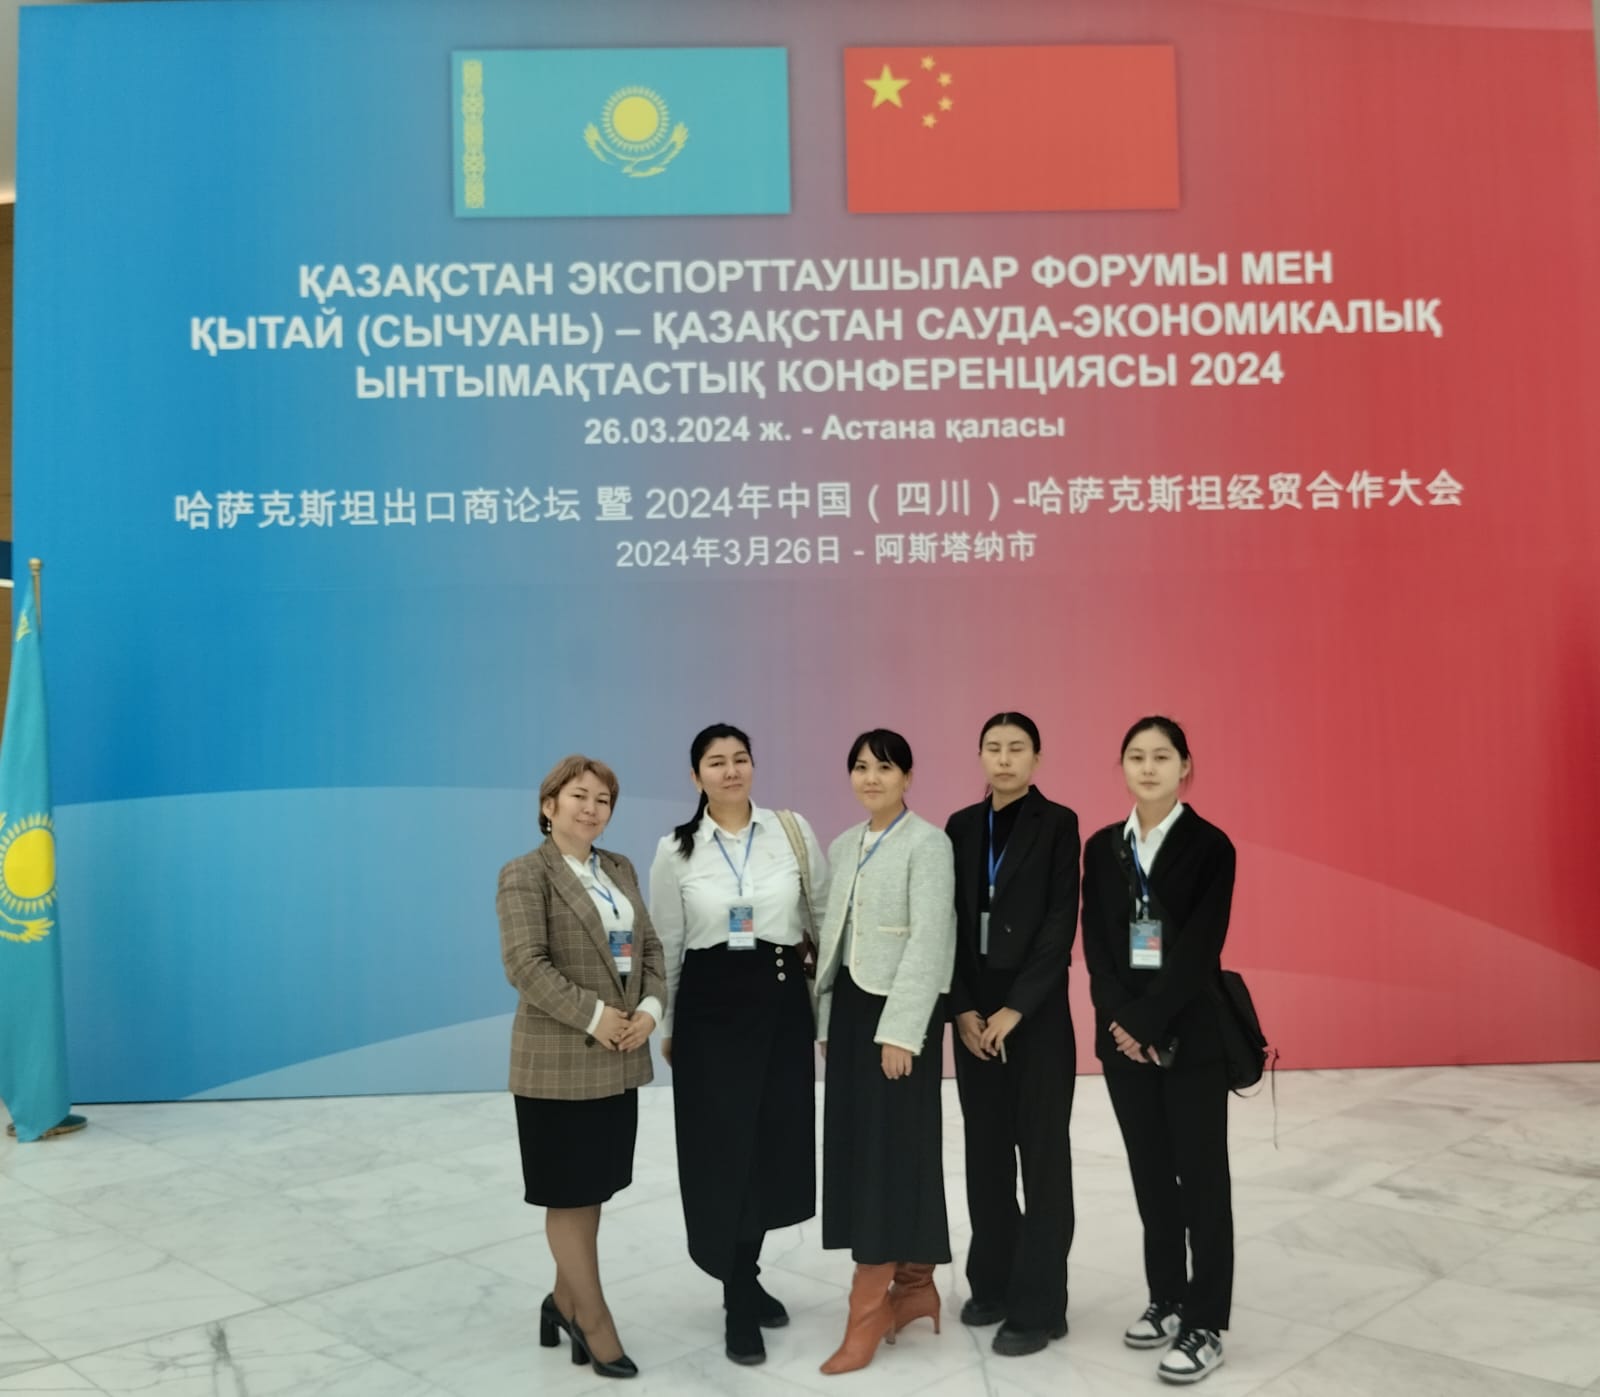 Состоялся Казахстанский форум экспортеров и Китайско-Казахстанская конференция торгово-экономического сотрудничества